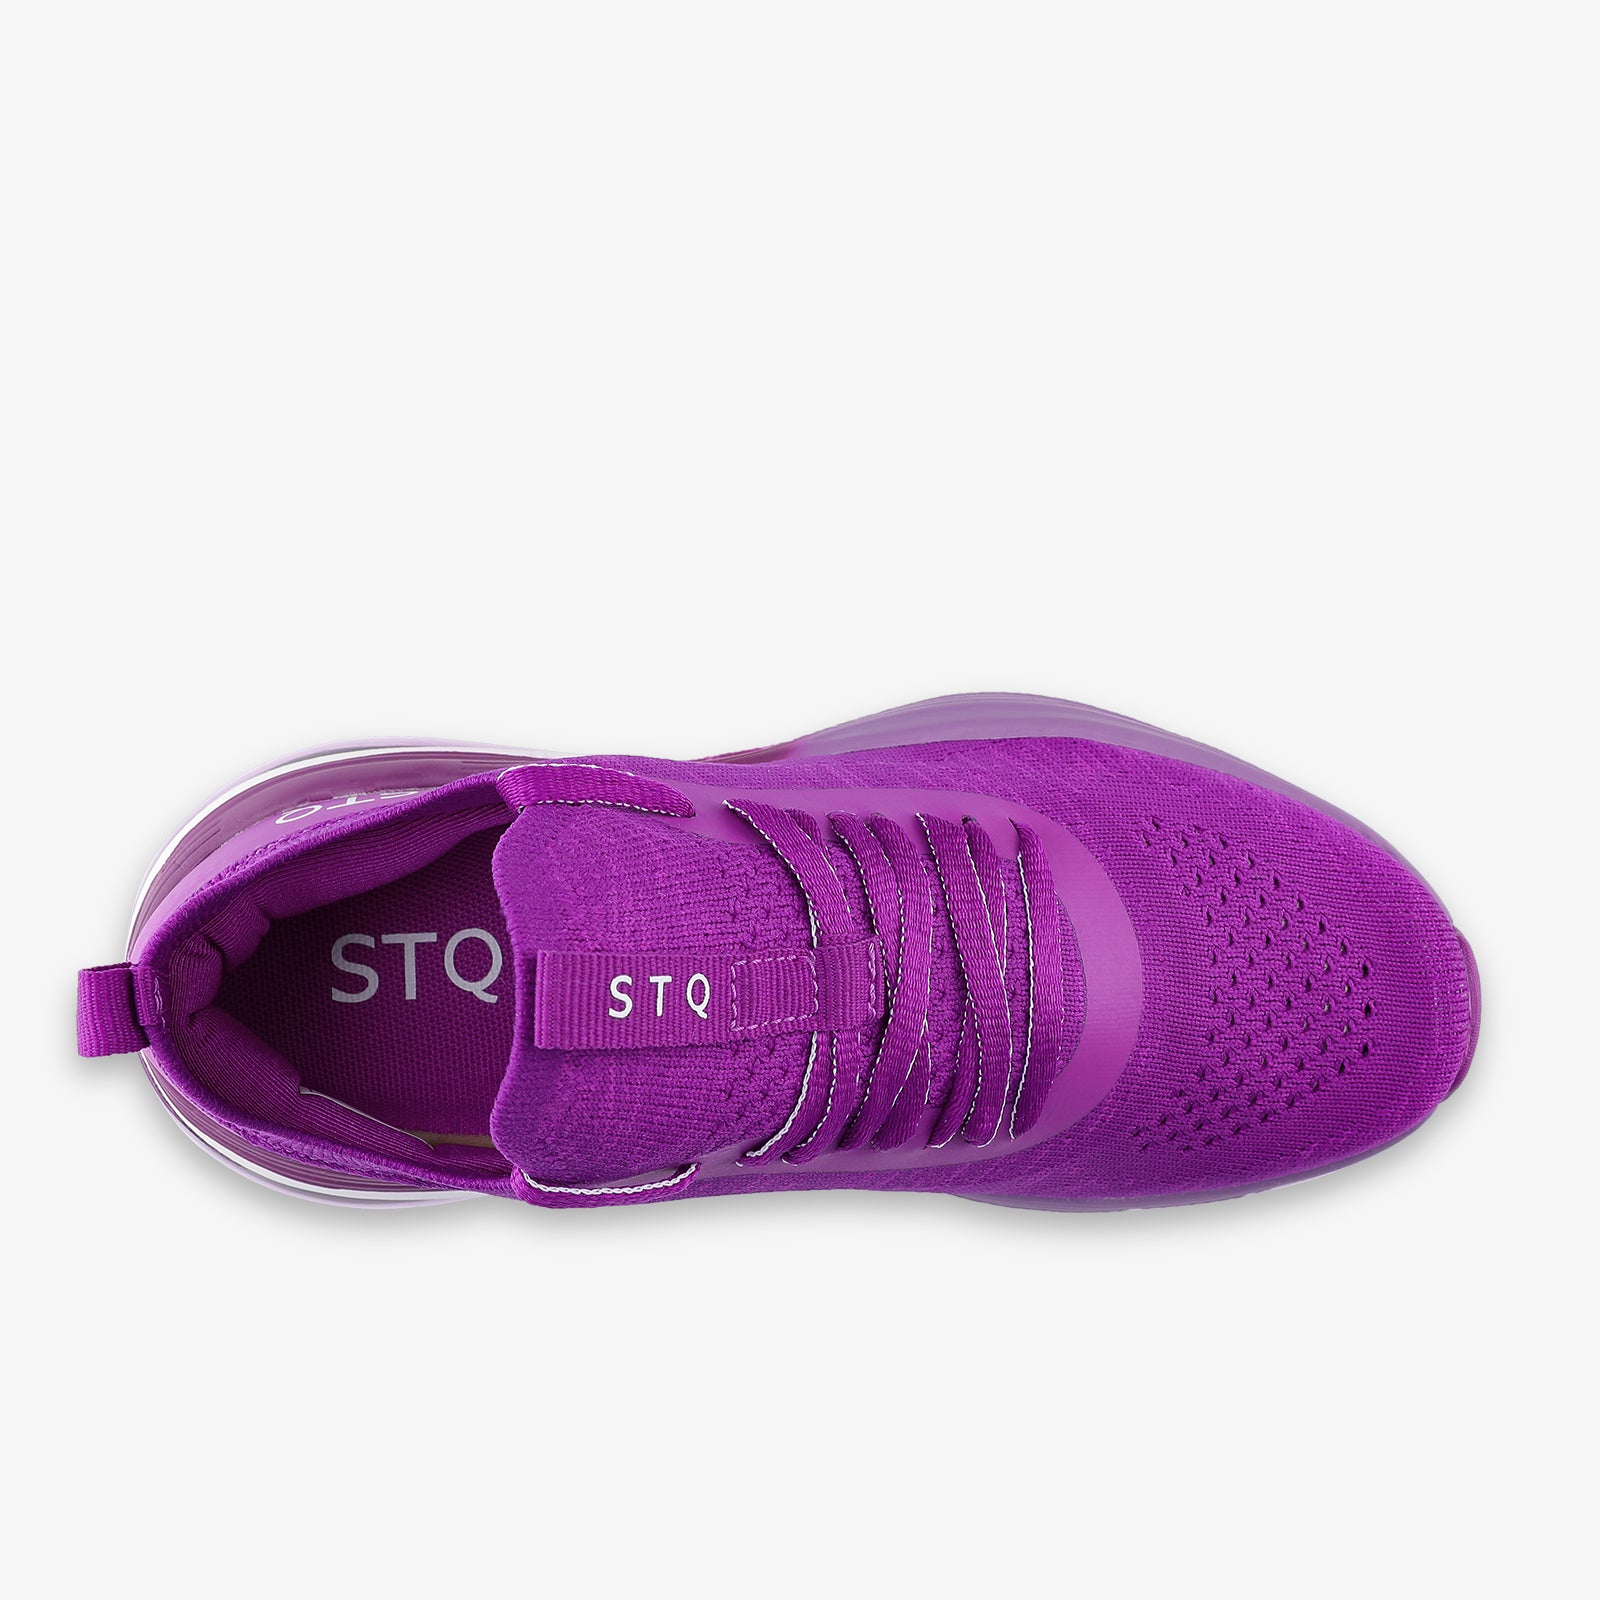 stq-fashion-sneakers-air-cushion-running-shoes-view